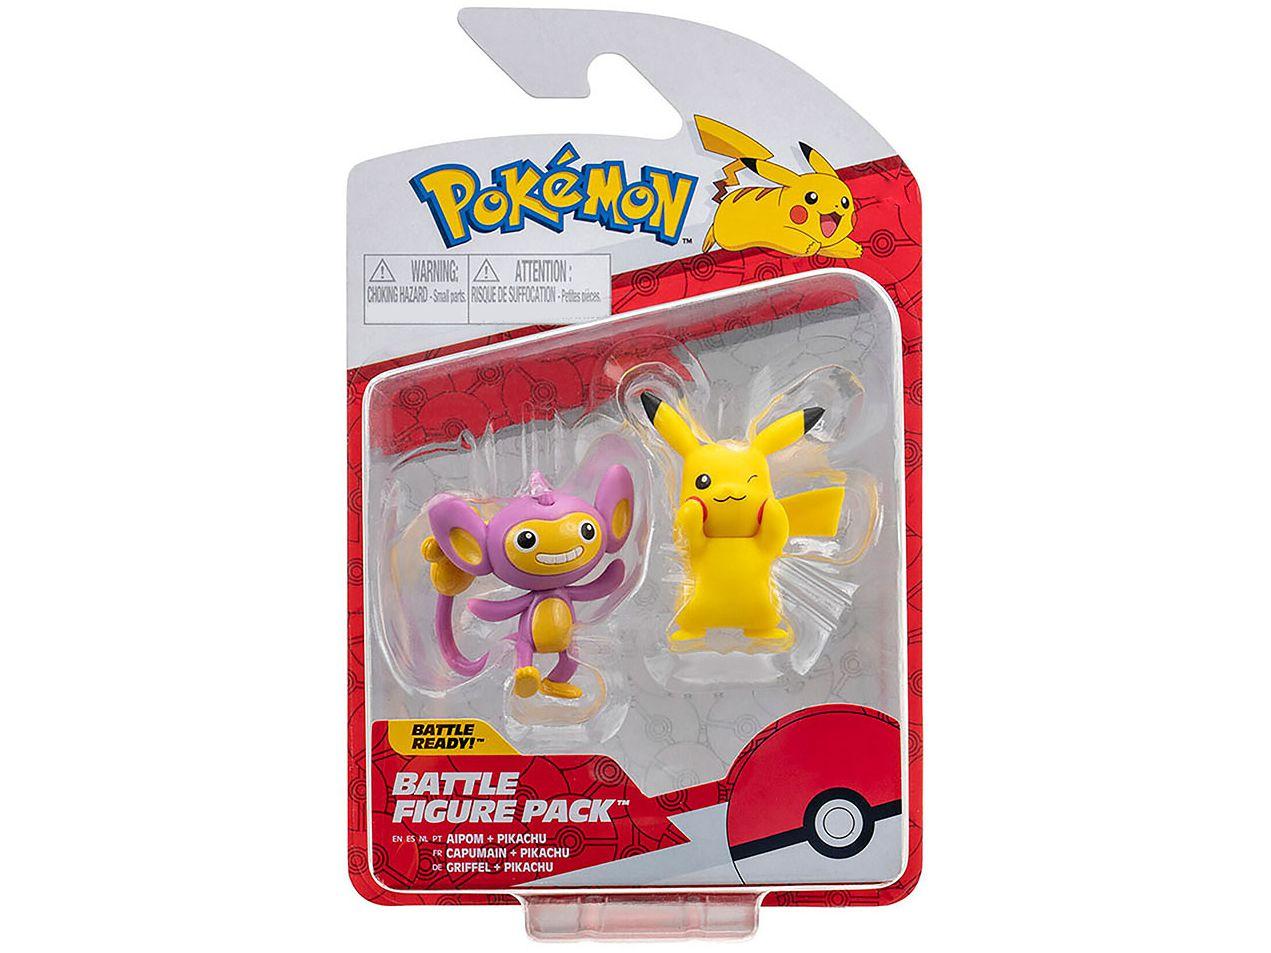 Pokémon Pikachu e Aipom Sunny Brinquedos - 2 Peças